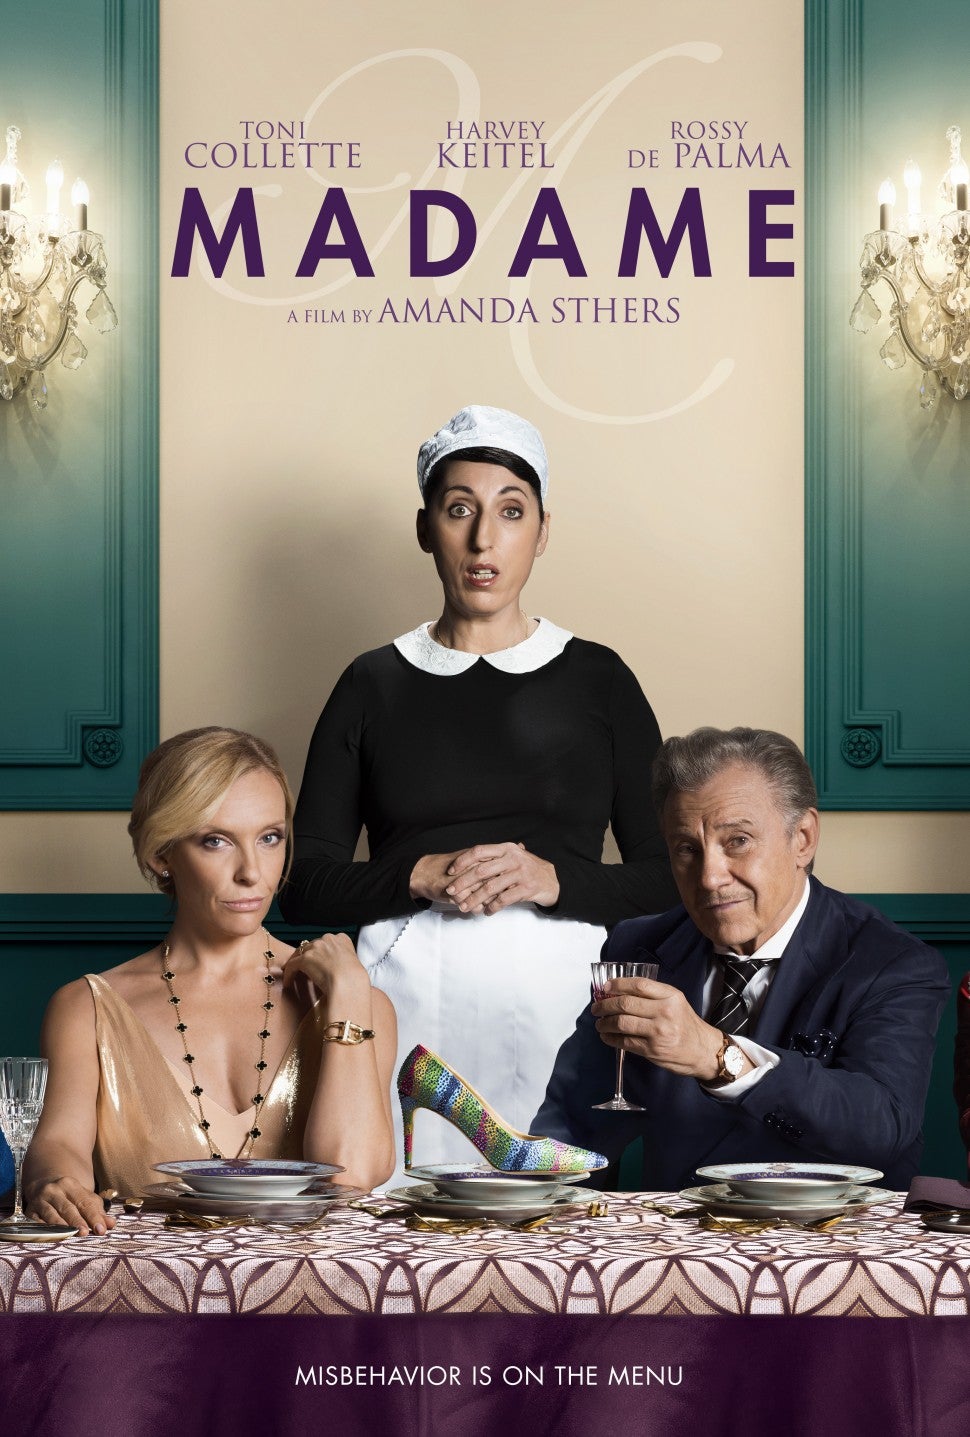 Madame Poster, Toni Collette, Harvey Keitel